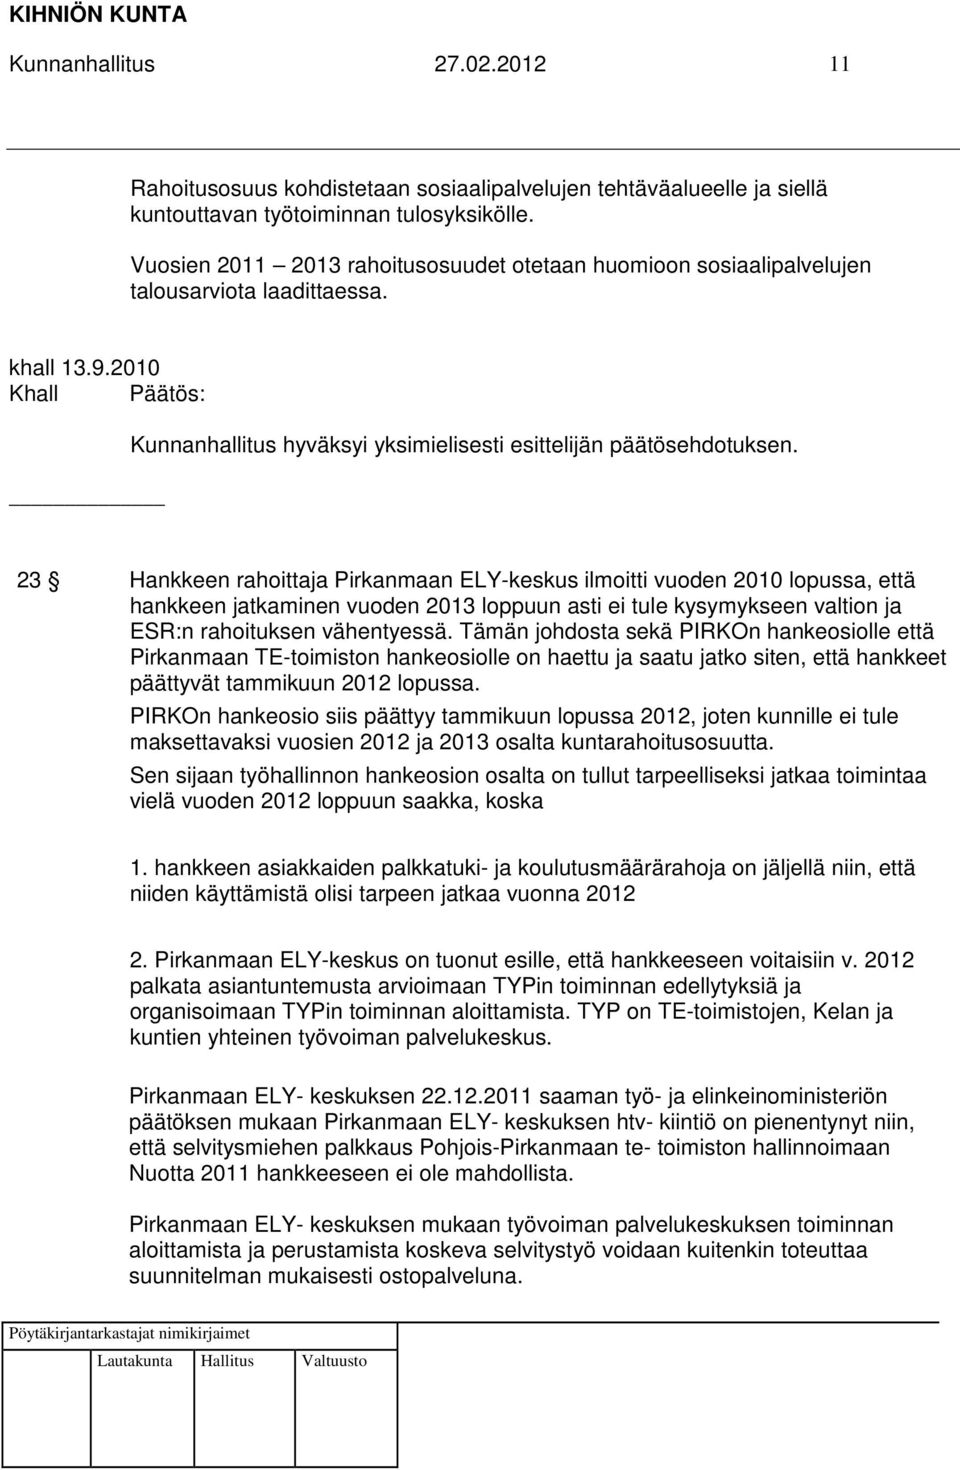 2010 23 Hankkeen rahoittaja Pirkanmaan ELY-keskus ilmoitti vuoden 2010 lopussa, että hankkeen jatkaminen vuoden 2013 loppuun asti ei tule kysymykseen valtion ja ESR:n rahoituksen vähentyessä.